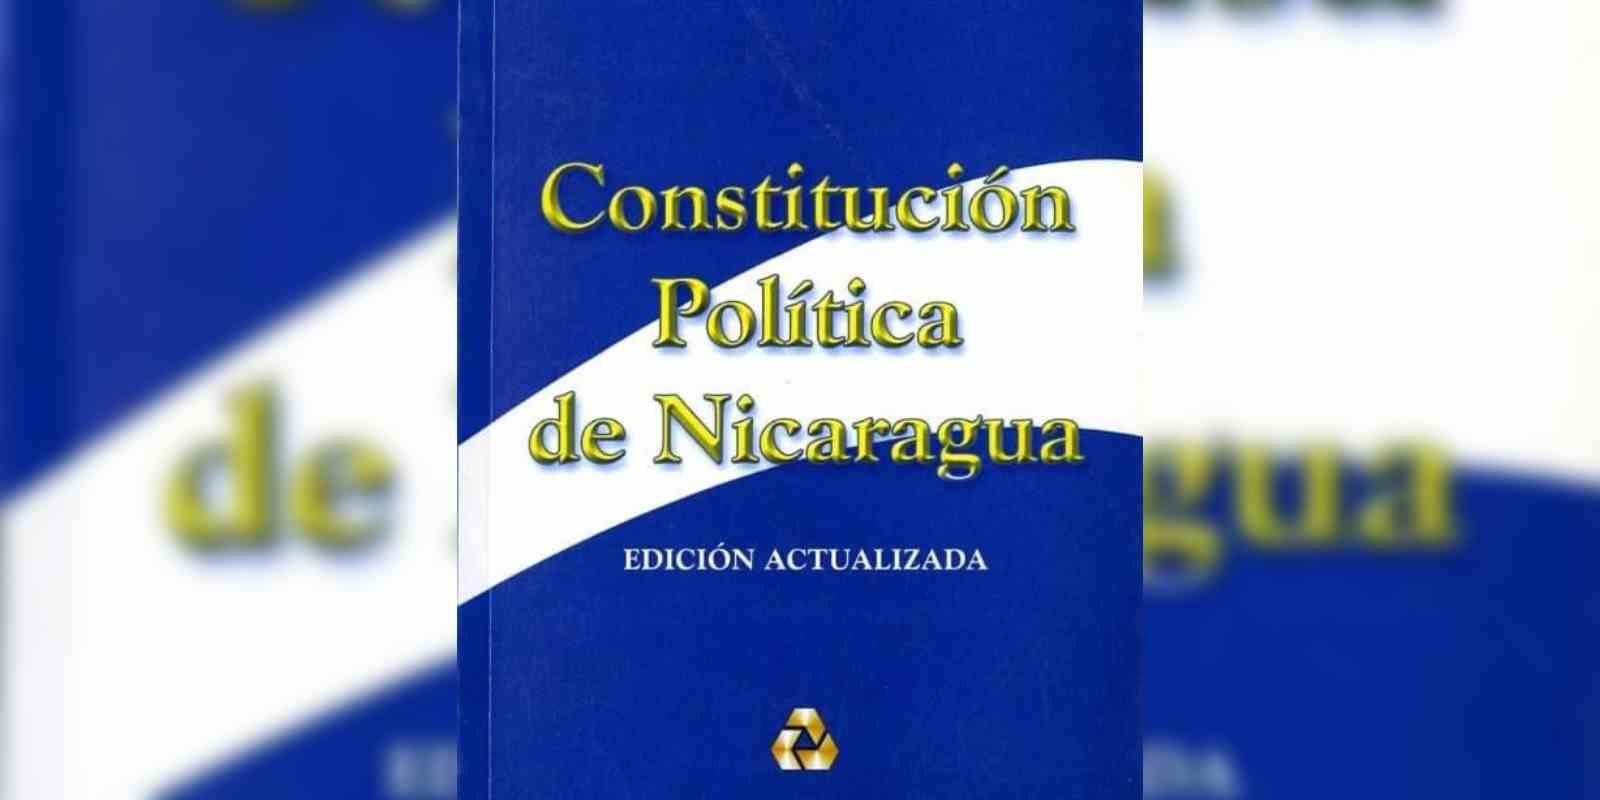 La actual Constitución Política de Nicaragua fue aprobada y promulgada el 9 de enero de 1987.